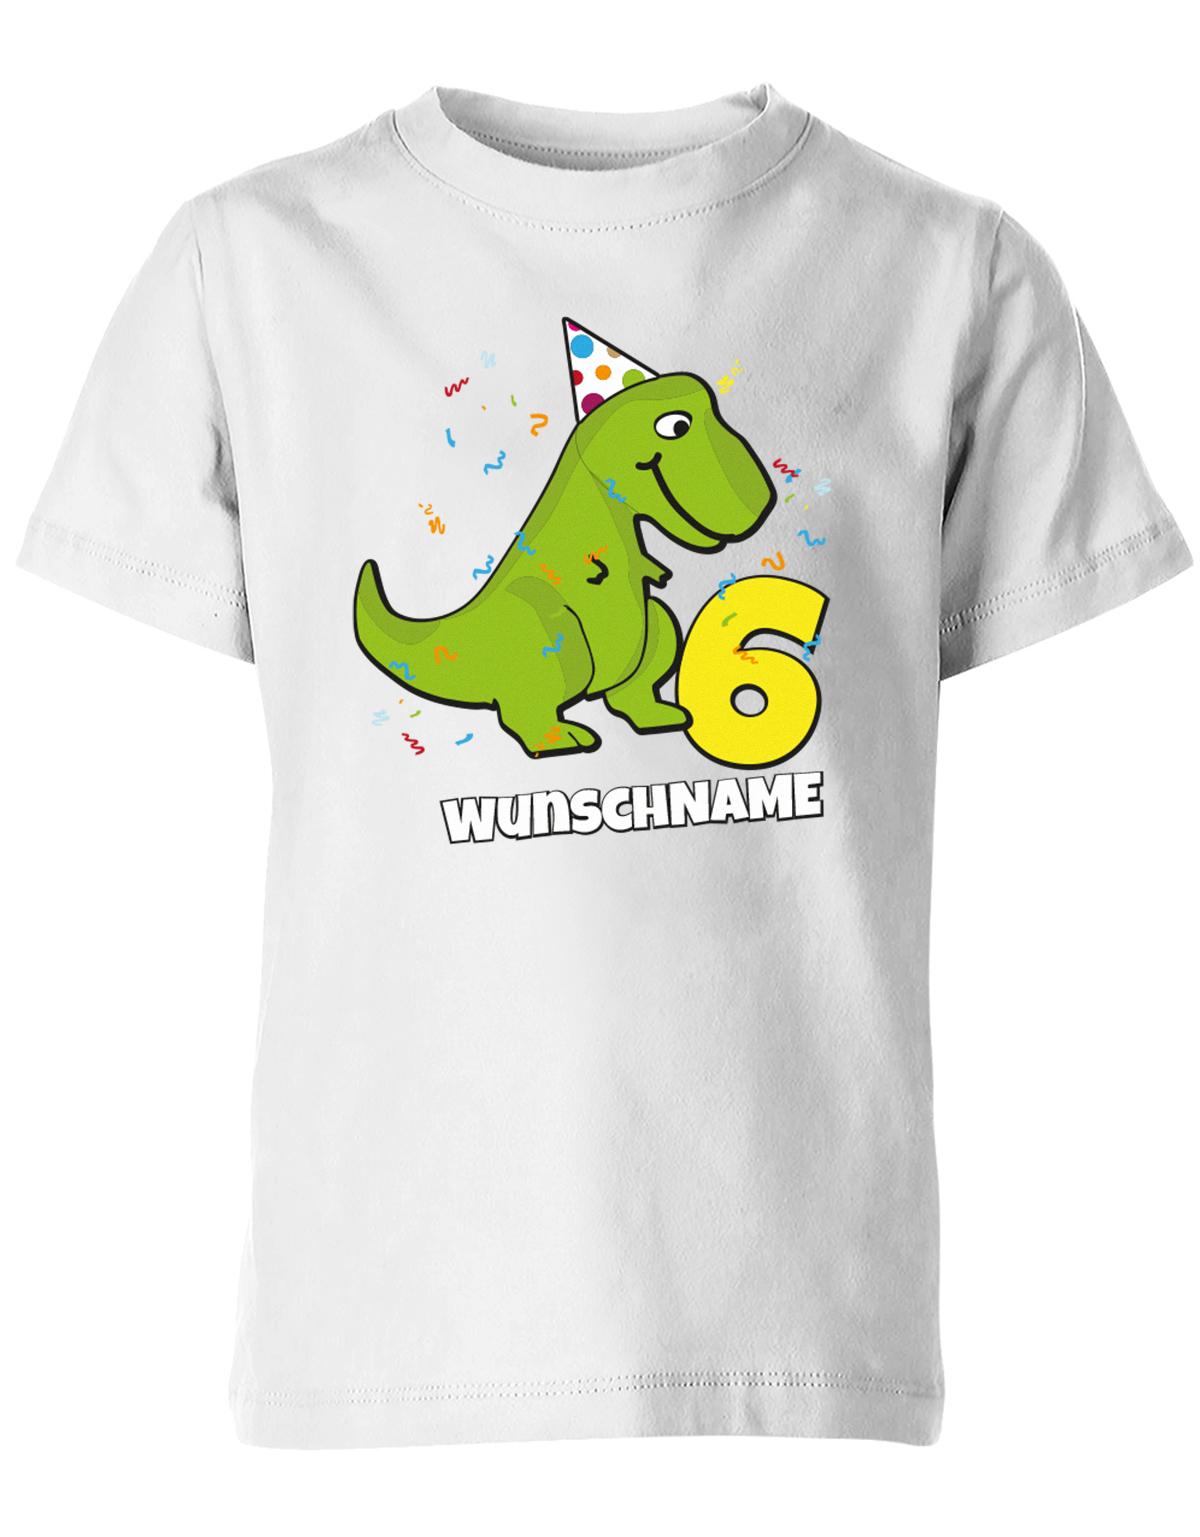 ich-bin-6-Dinosaurier-t-rex-wunschname-geburtstag-kinder-shirt-weiss